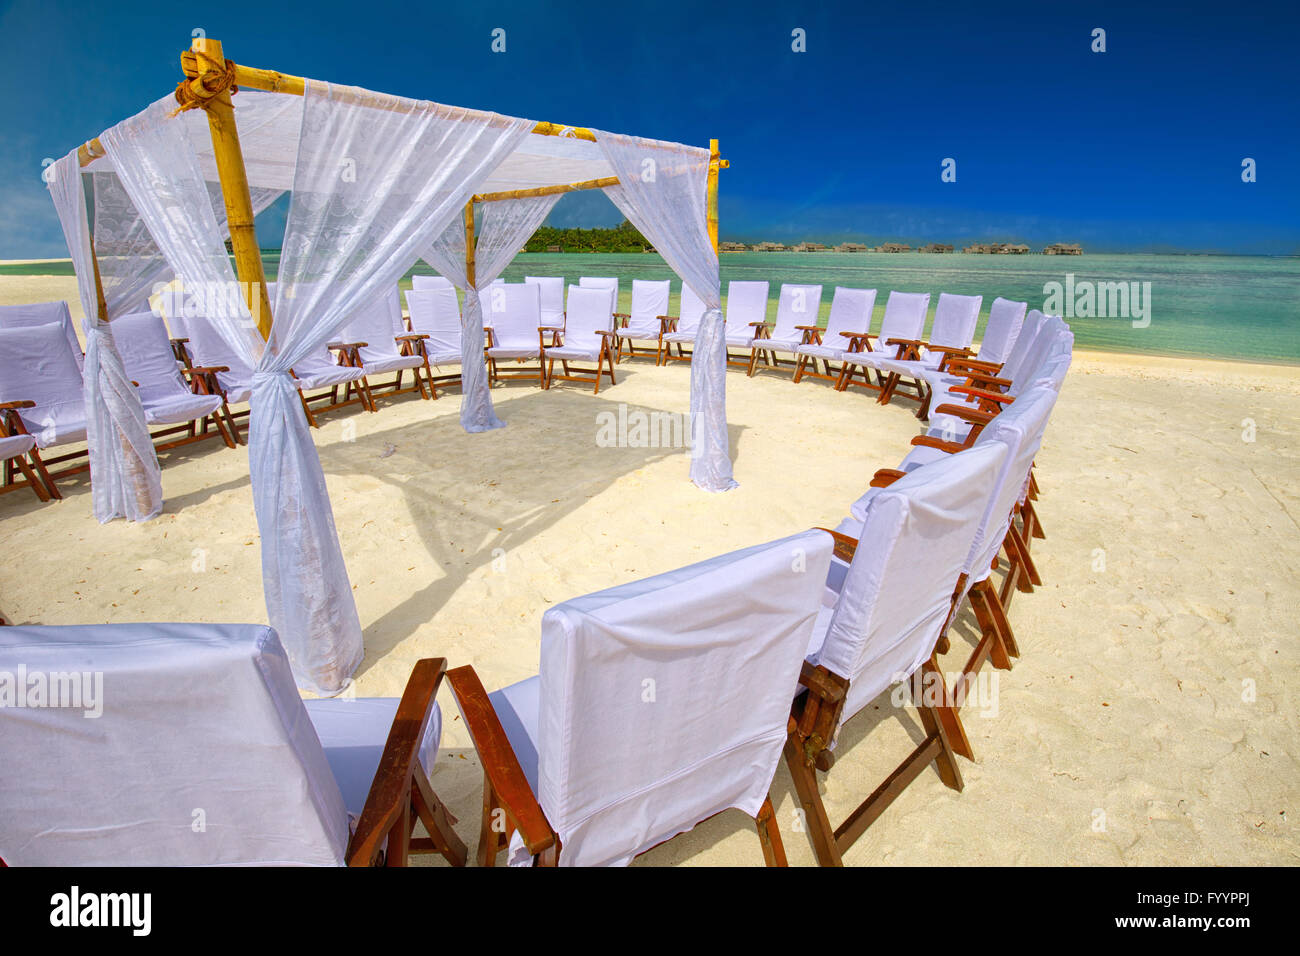 Sedie decorate e arco di cerimonia nuziale sull isola tropicale con spiaggia sabbiosa e tourquise acqua chiara Foto Stock